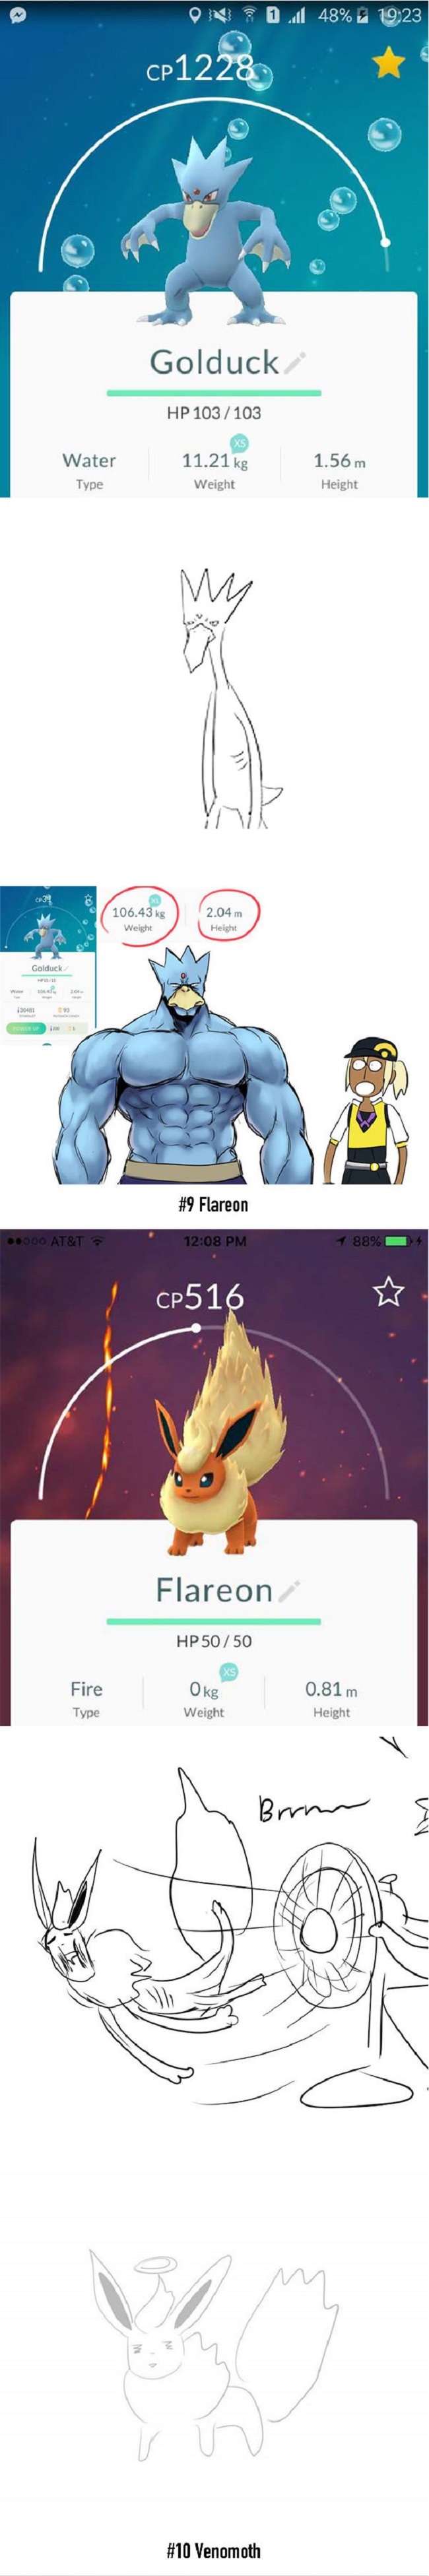 Chết cười với hình dáng thật của Pokemon dựa theo chỉ số cân nặng và chiều cao